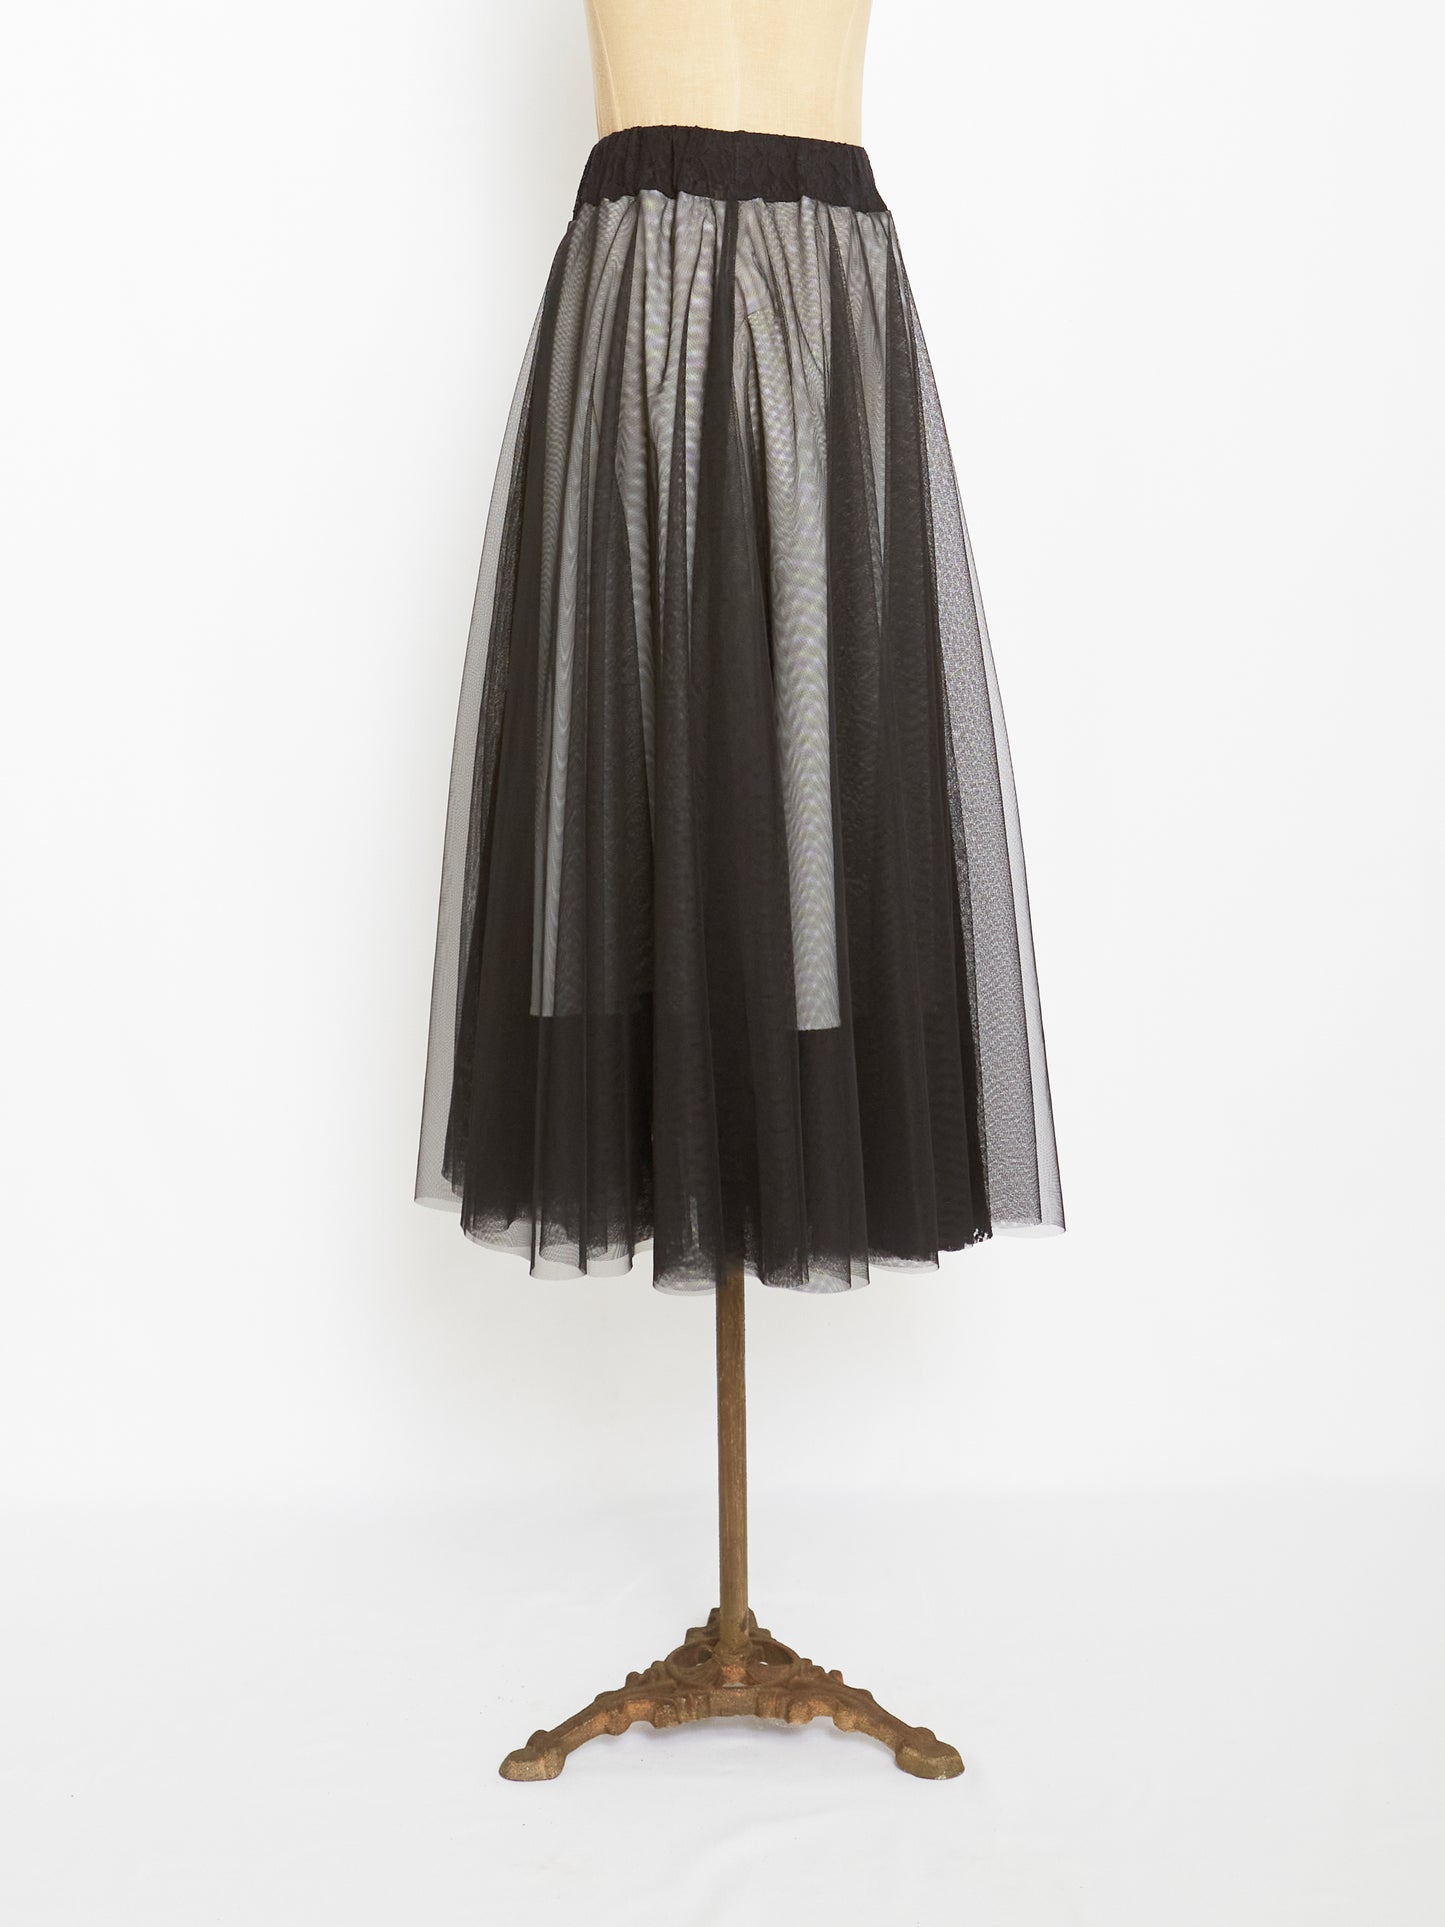 The Black Tulle Skirt